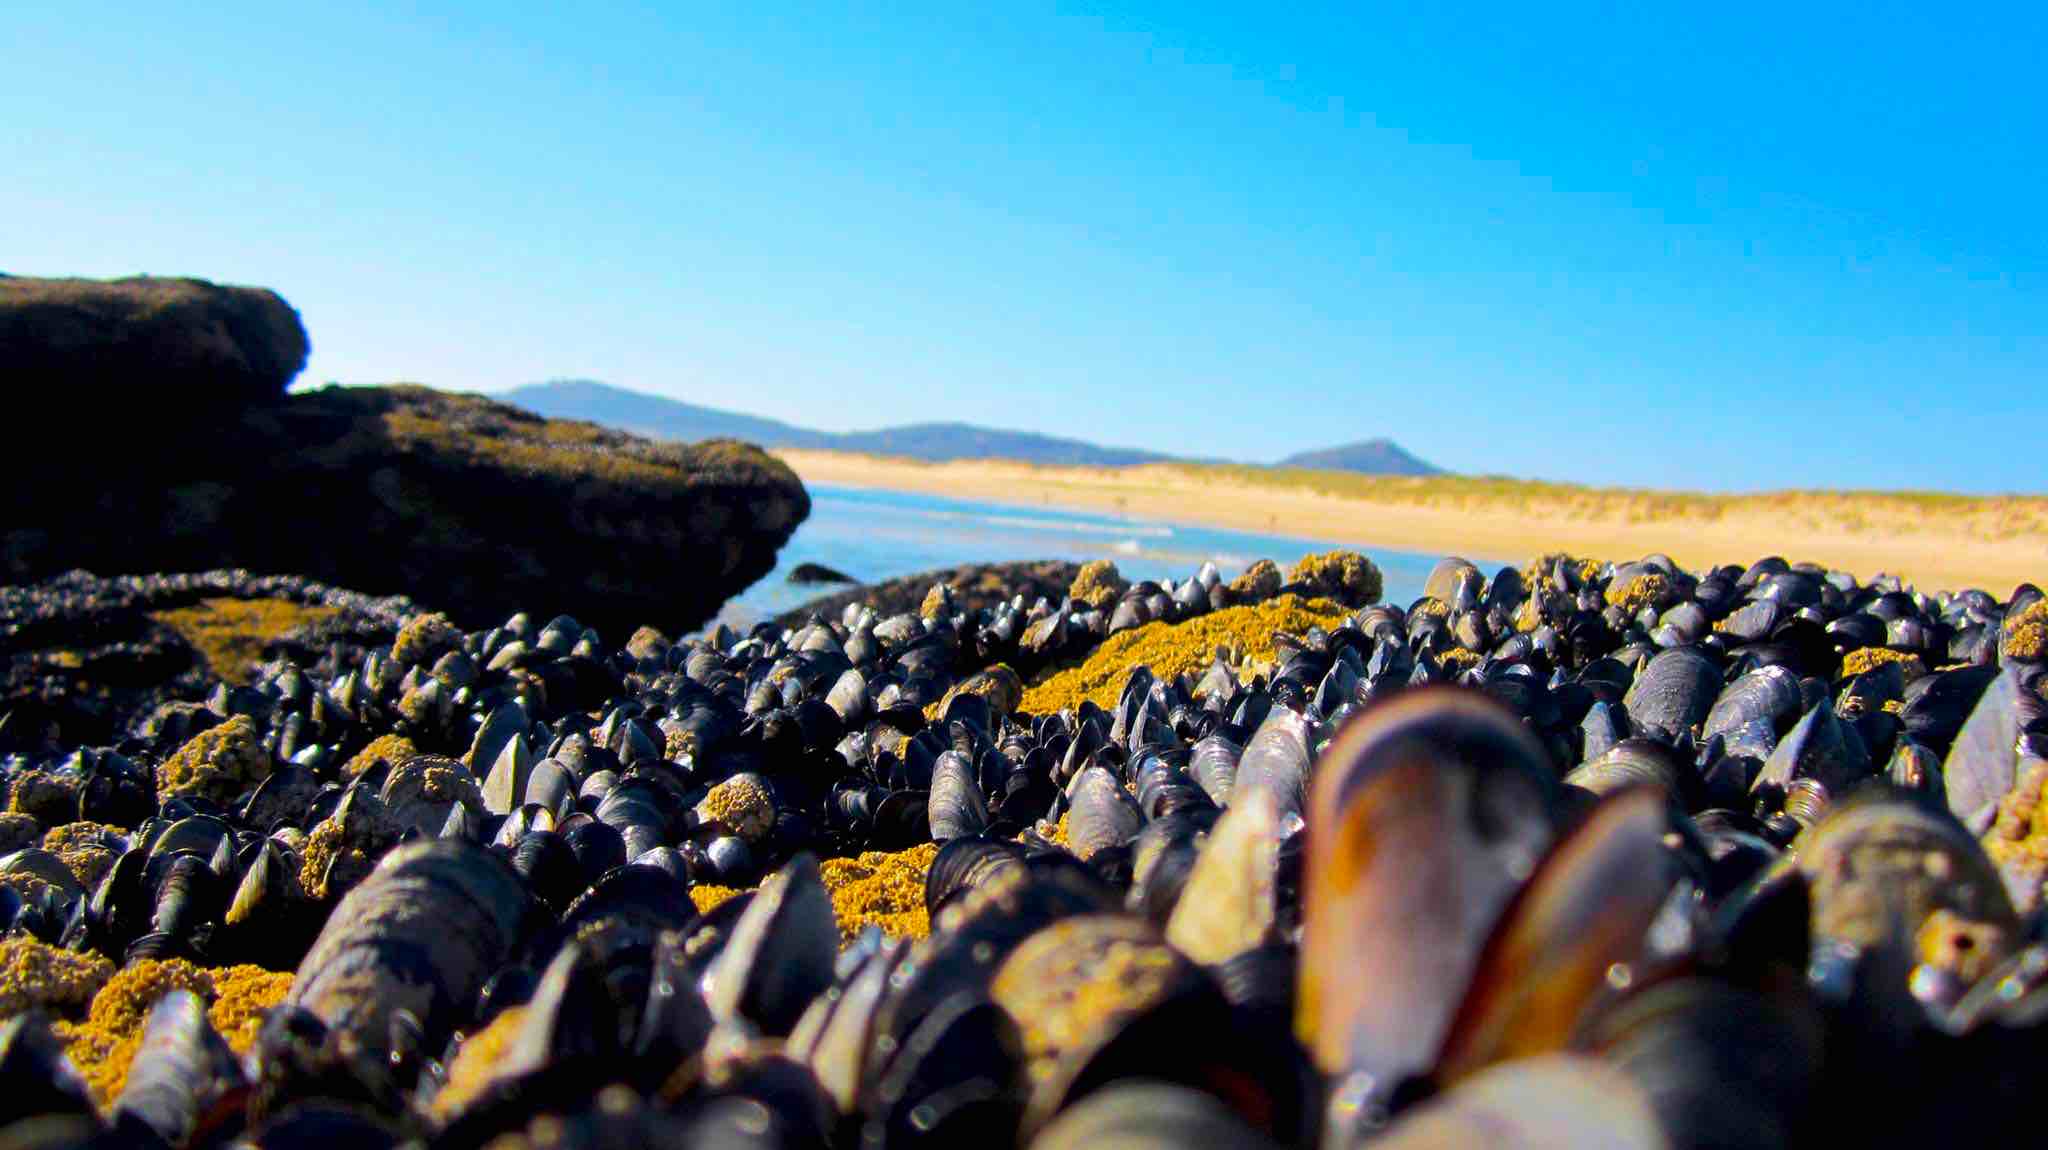 La riqueza de la costa gallega es increíble. El marisco crece en cualquier lugar. Playa de Vilar y Duna de Corrubedo. ©María Calvo.